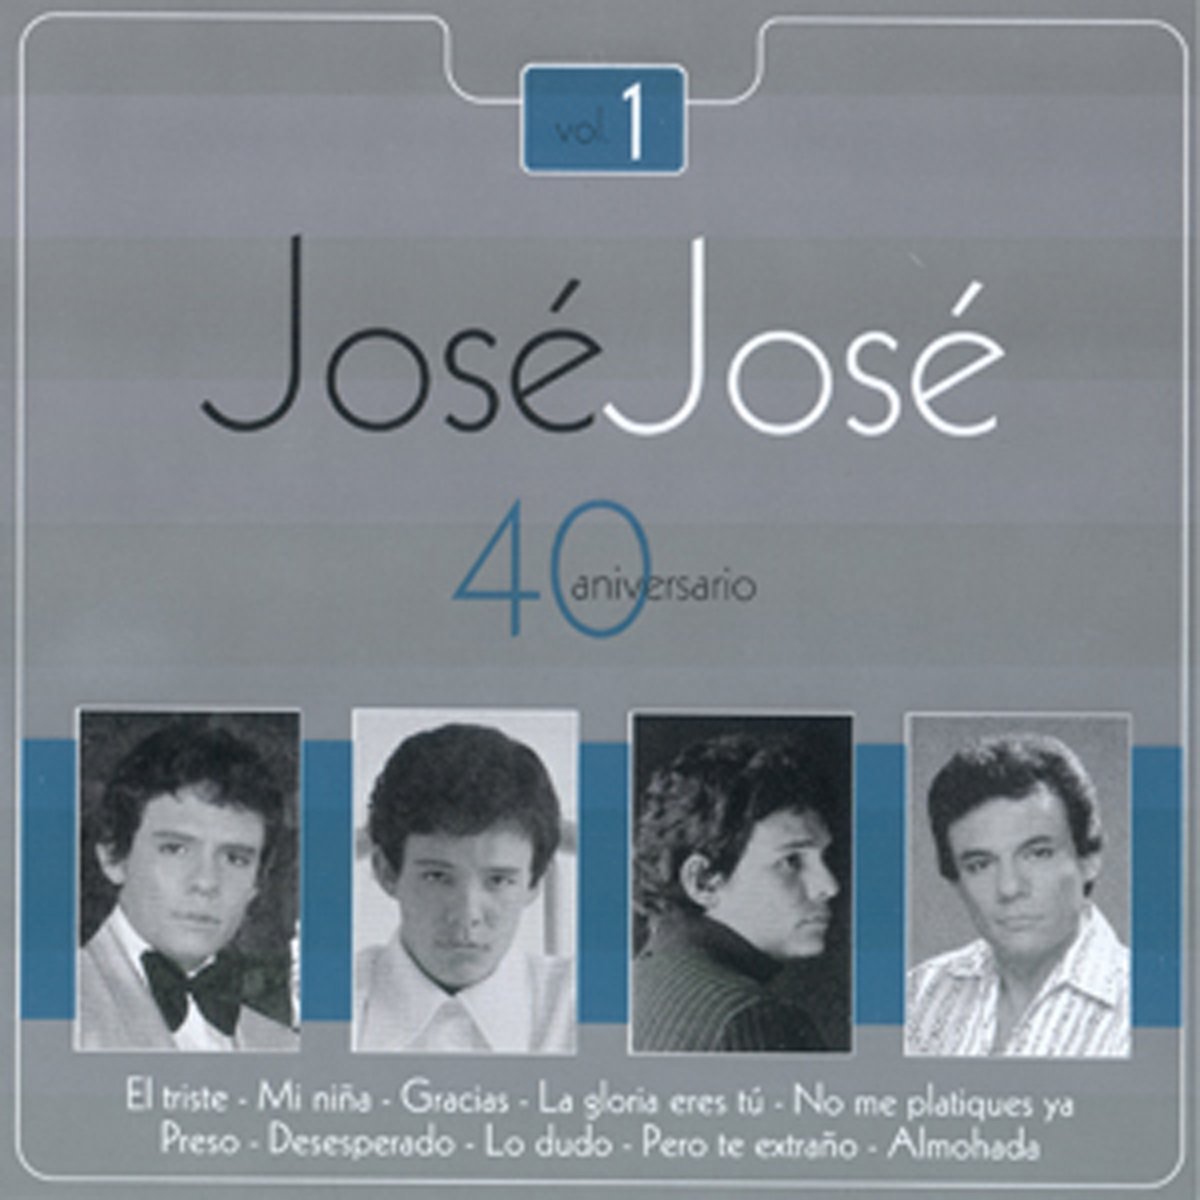 40 Aniversario Vol.3 Jose Jose